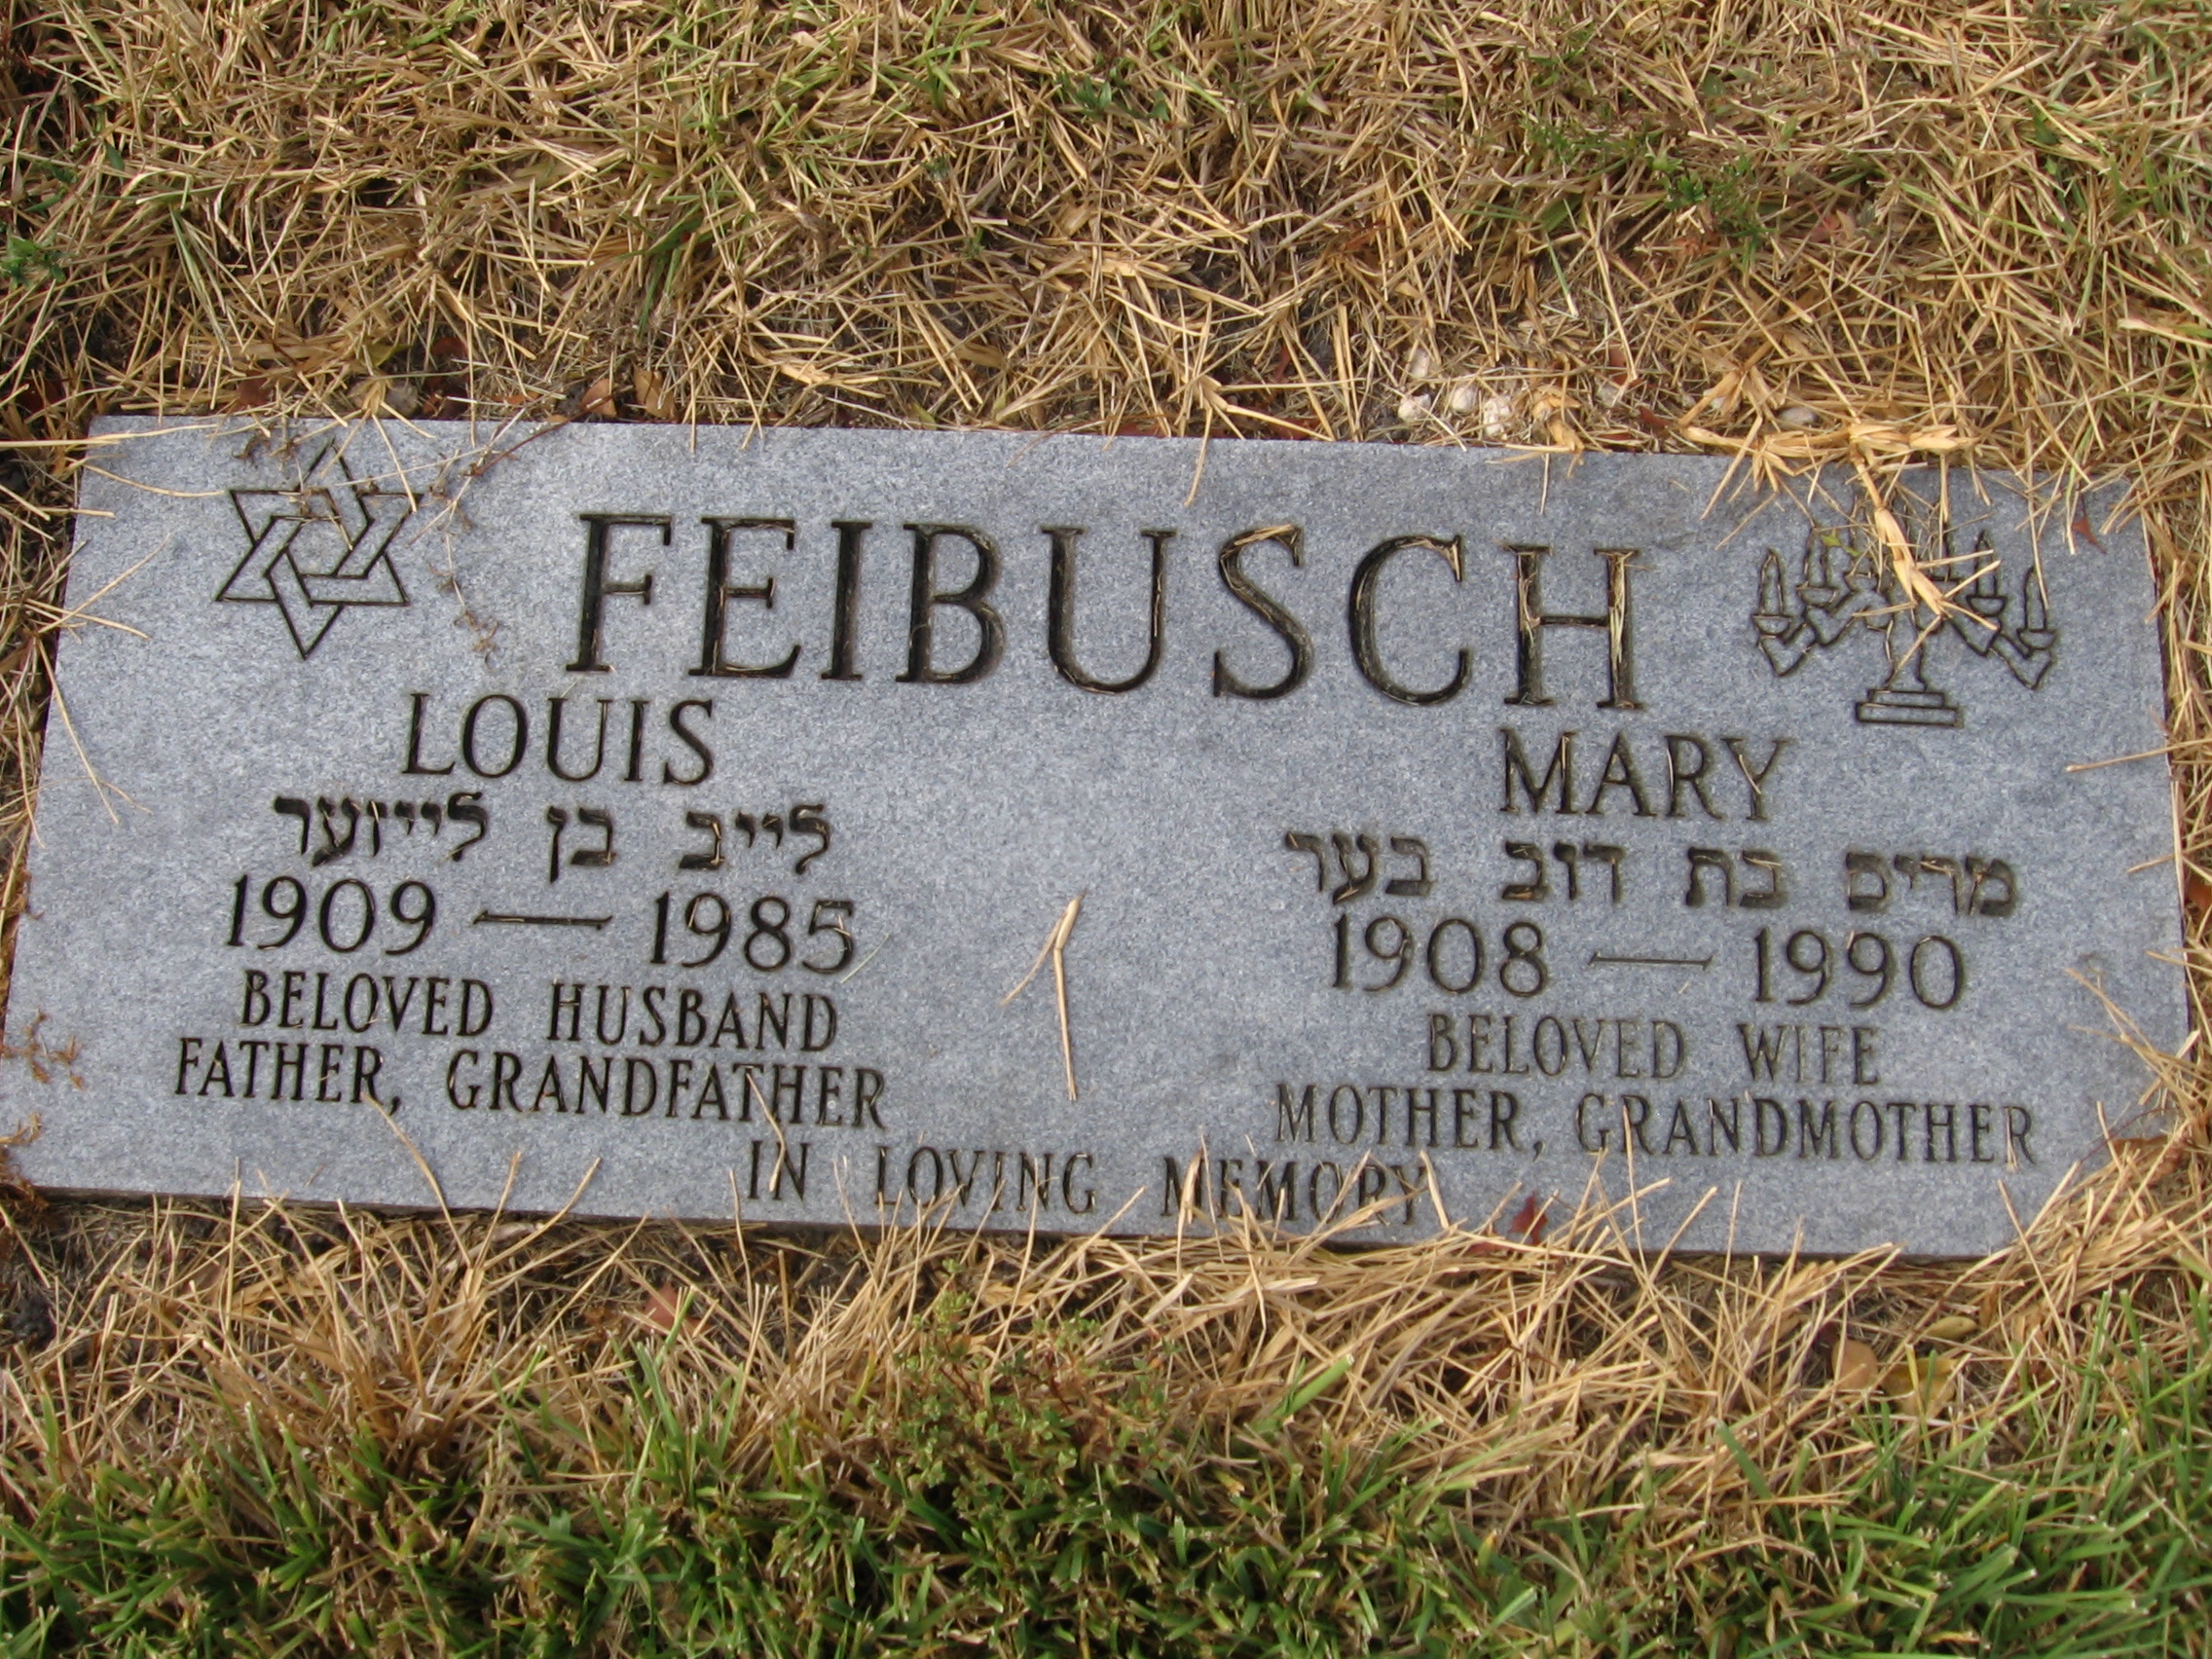 Mary Feibusch